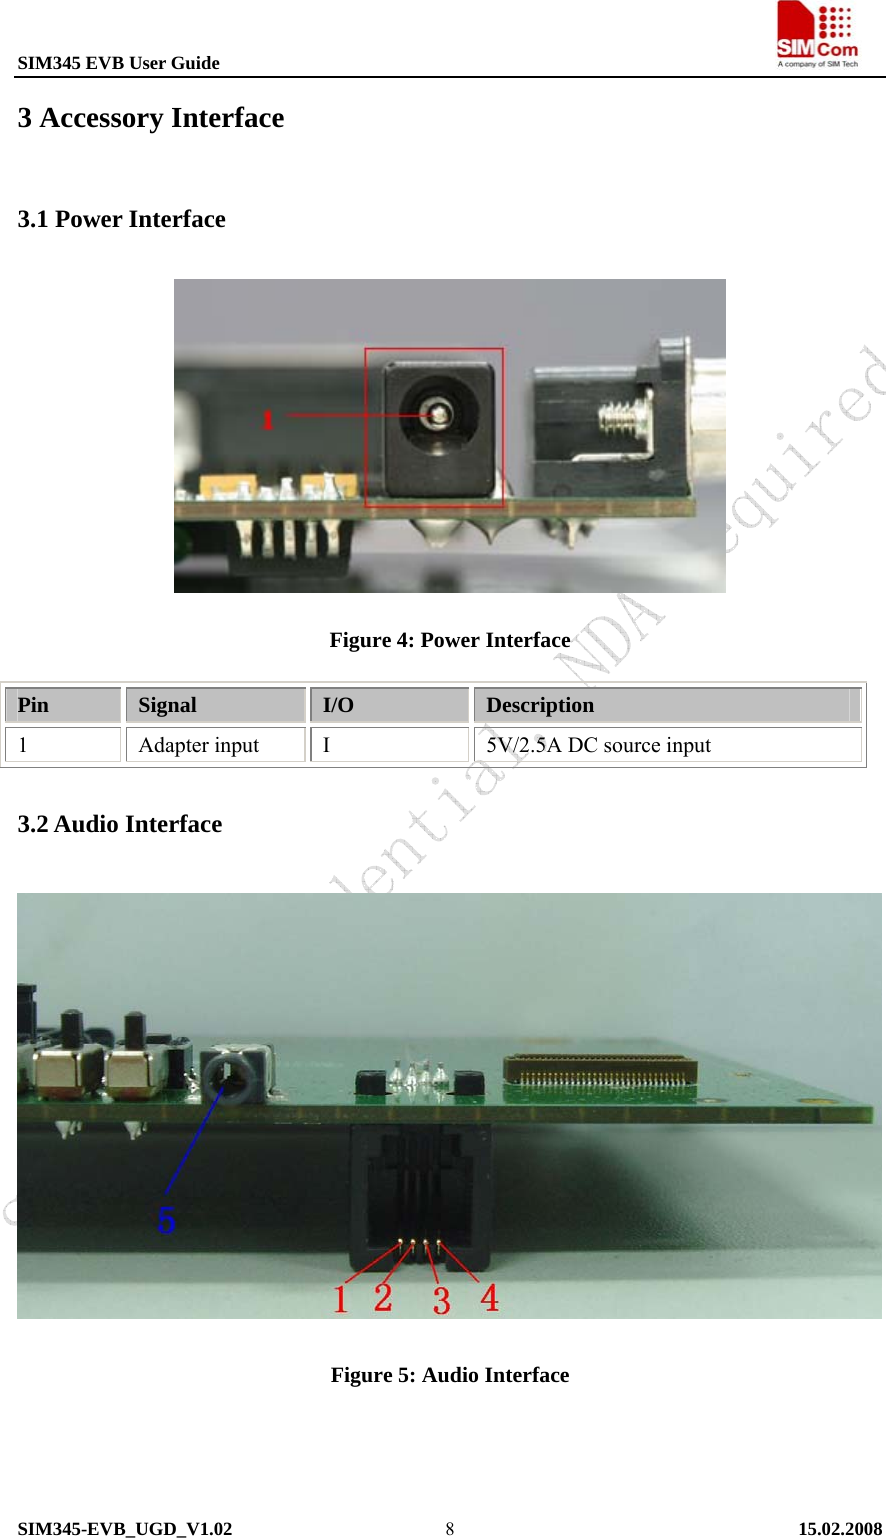 SIM345 EVB User Guide                                                             SIM345-EVB_UGD_V1.02   15.02.2008   83 Accessory Interface 3.1 Power Interface  Figure 4: Power Interface Pin  Signal  I/O  Description 1 Adapter input I 5V/2.5A DC source input 3.2 Audio Interface  Figure 5: Audio Interface    